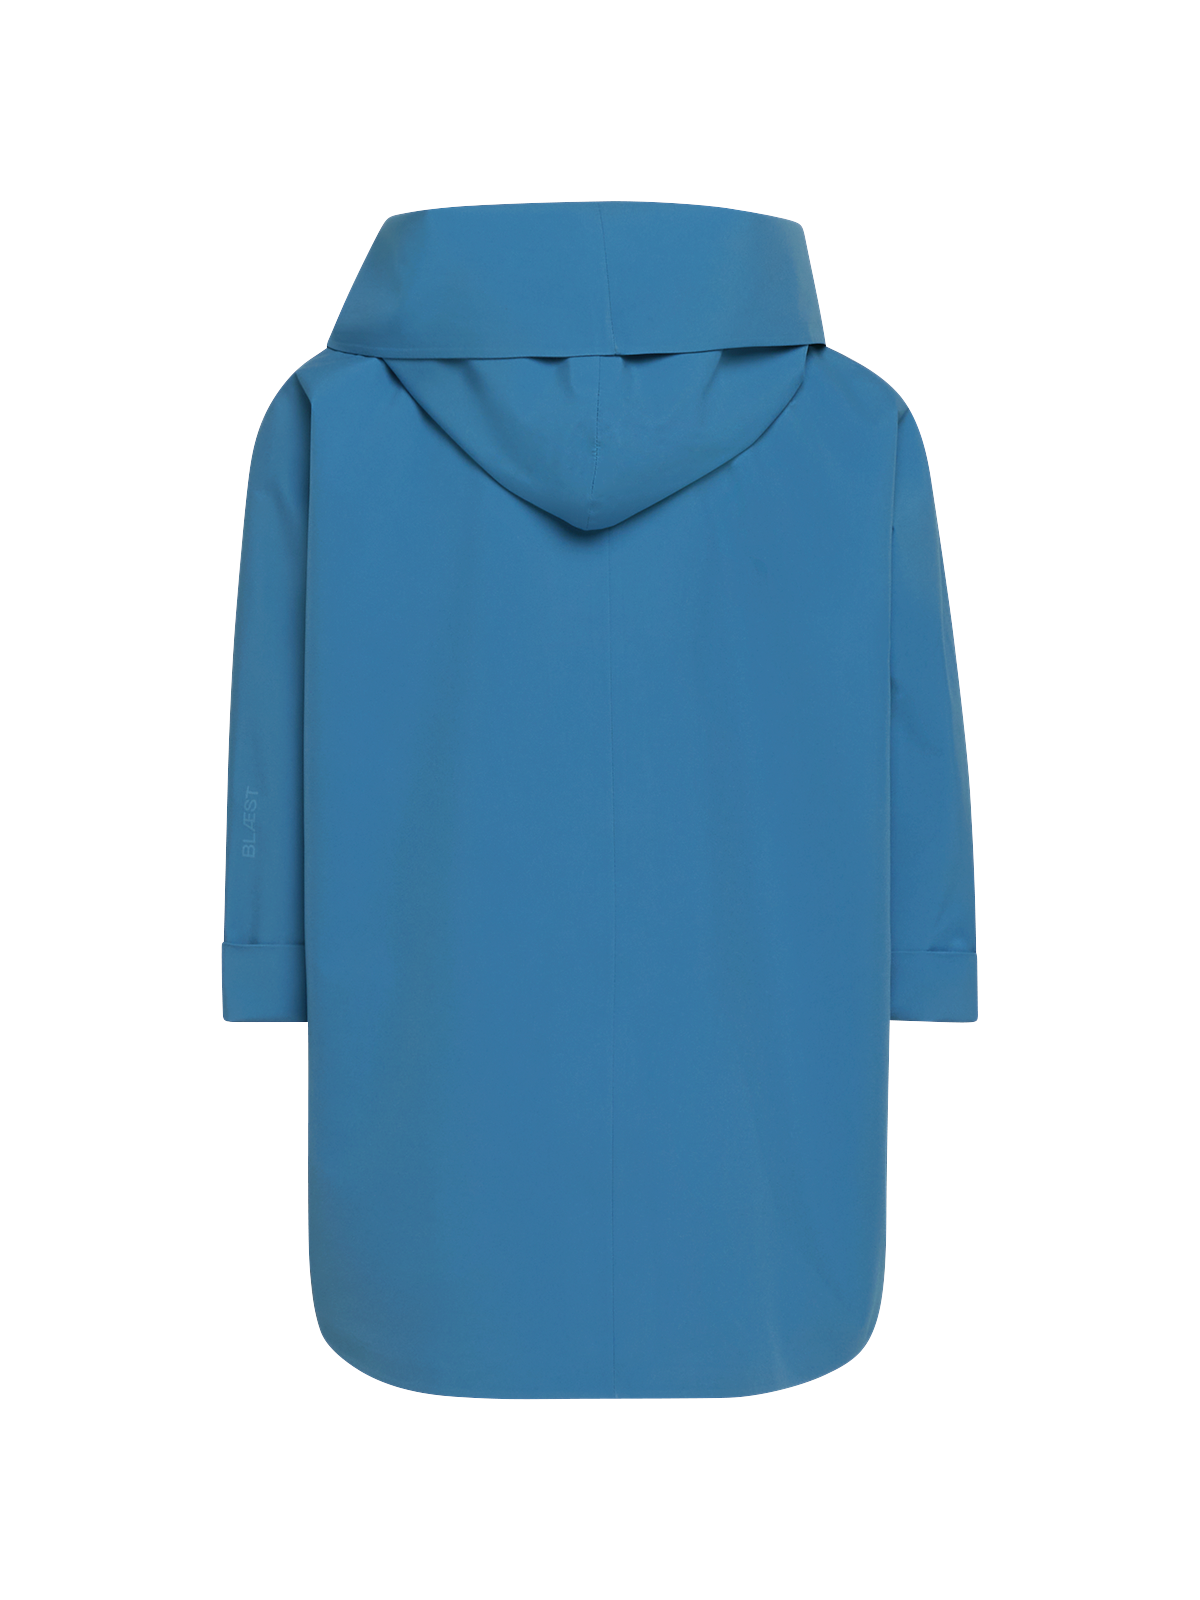 Bergen mini poncho in the color Coronet blue